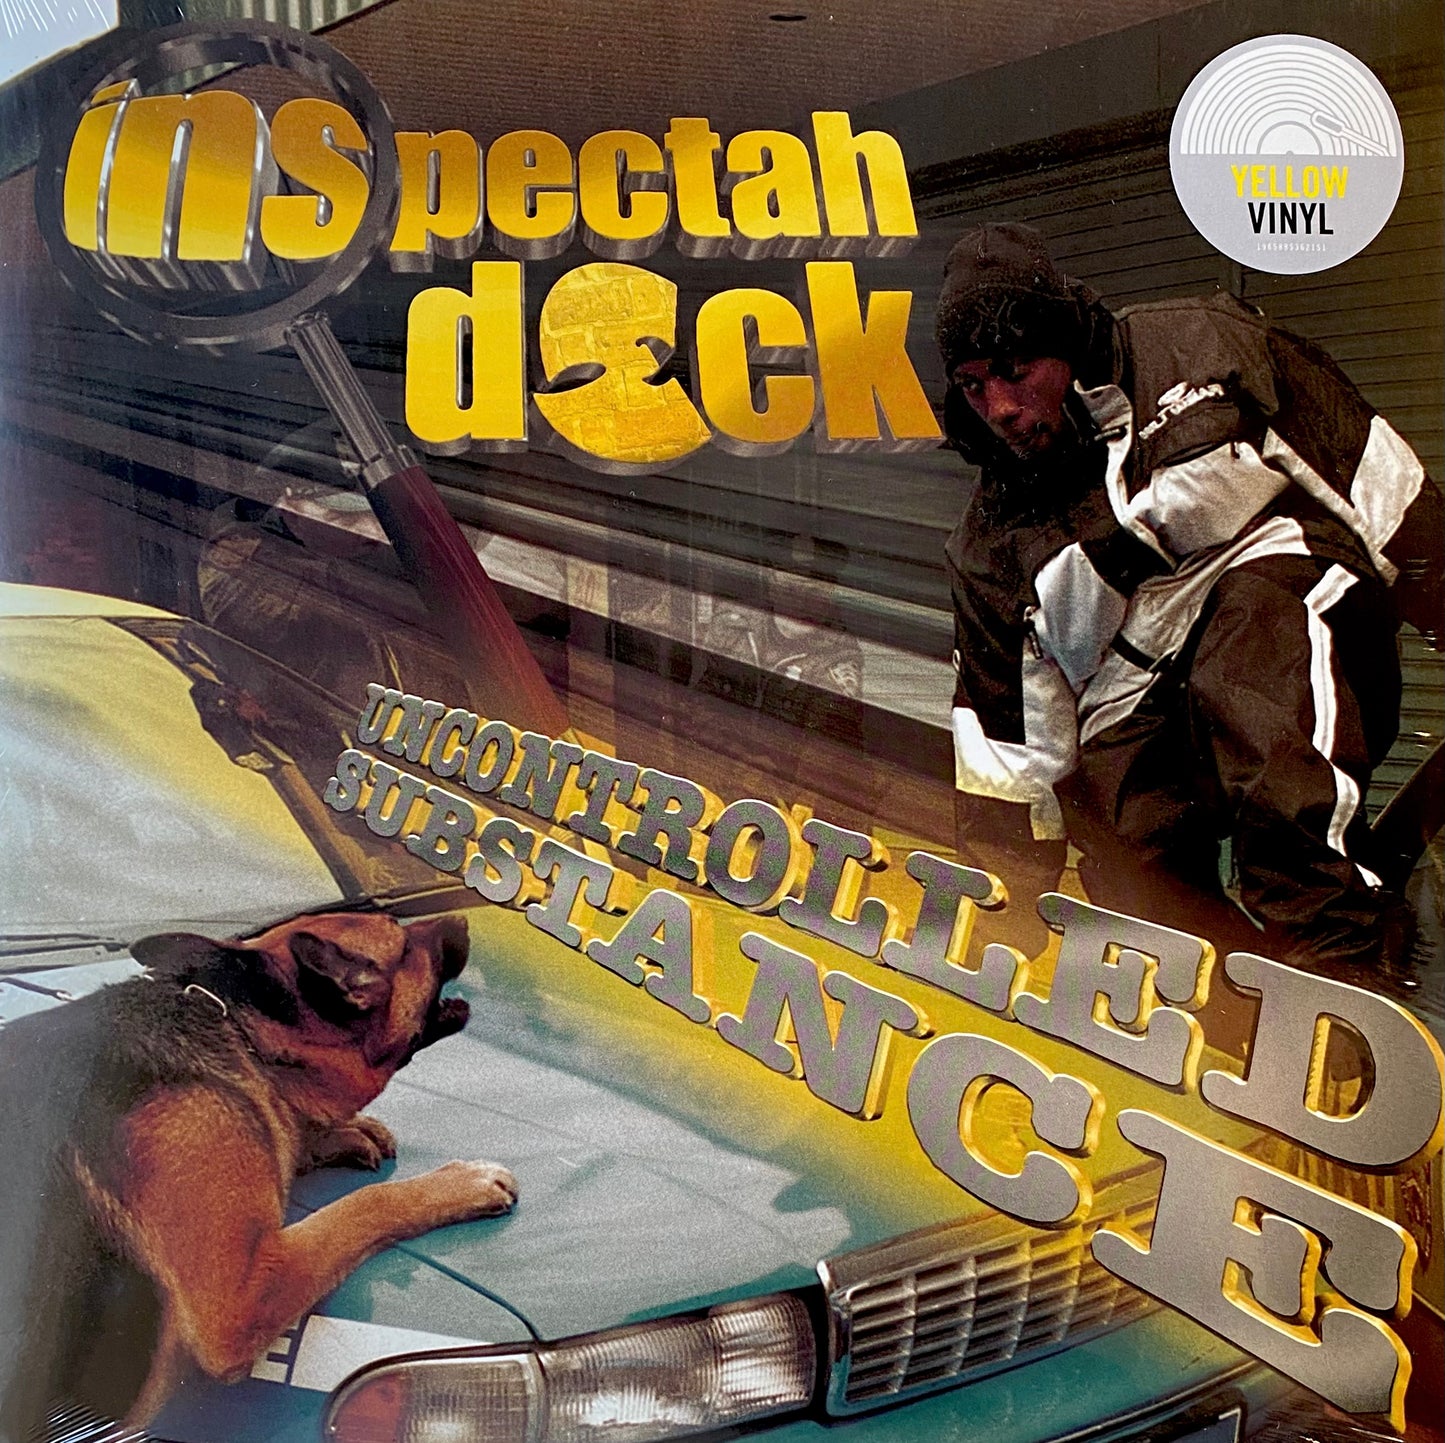 Inspectah Deck - Uncontrolled Substance (2xLP, Album, RE, Yel) (M / M)